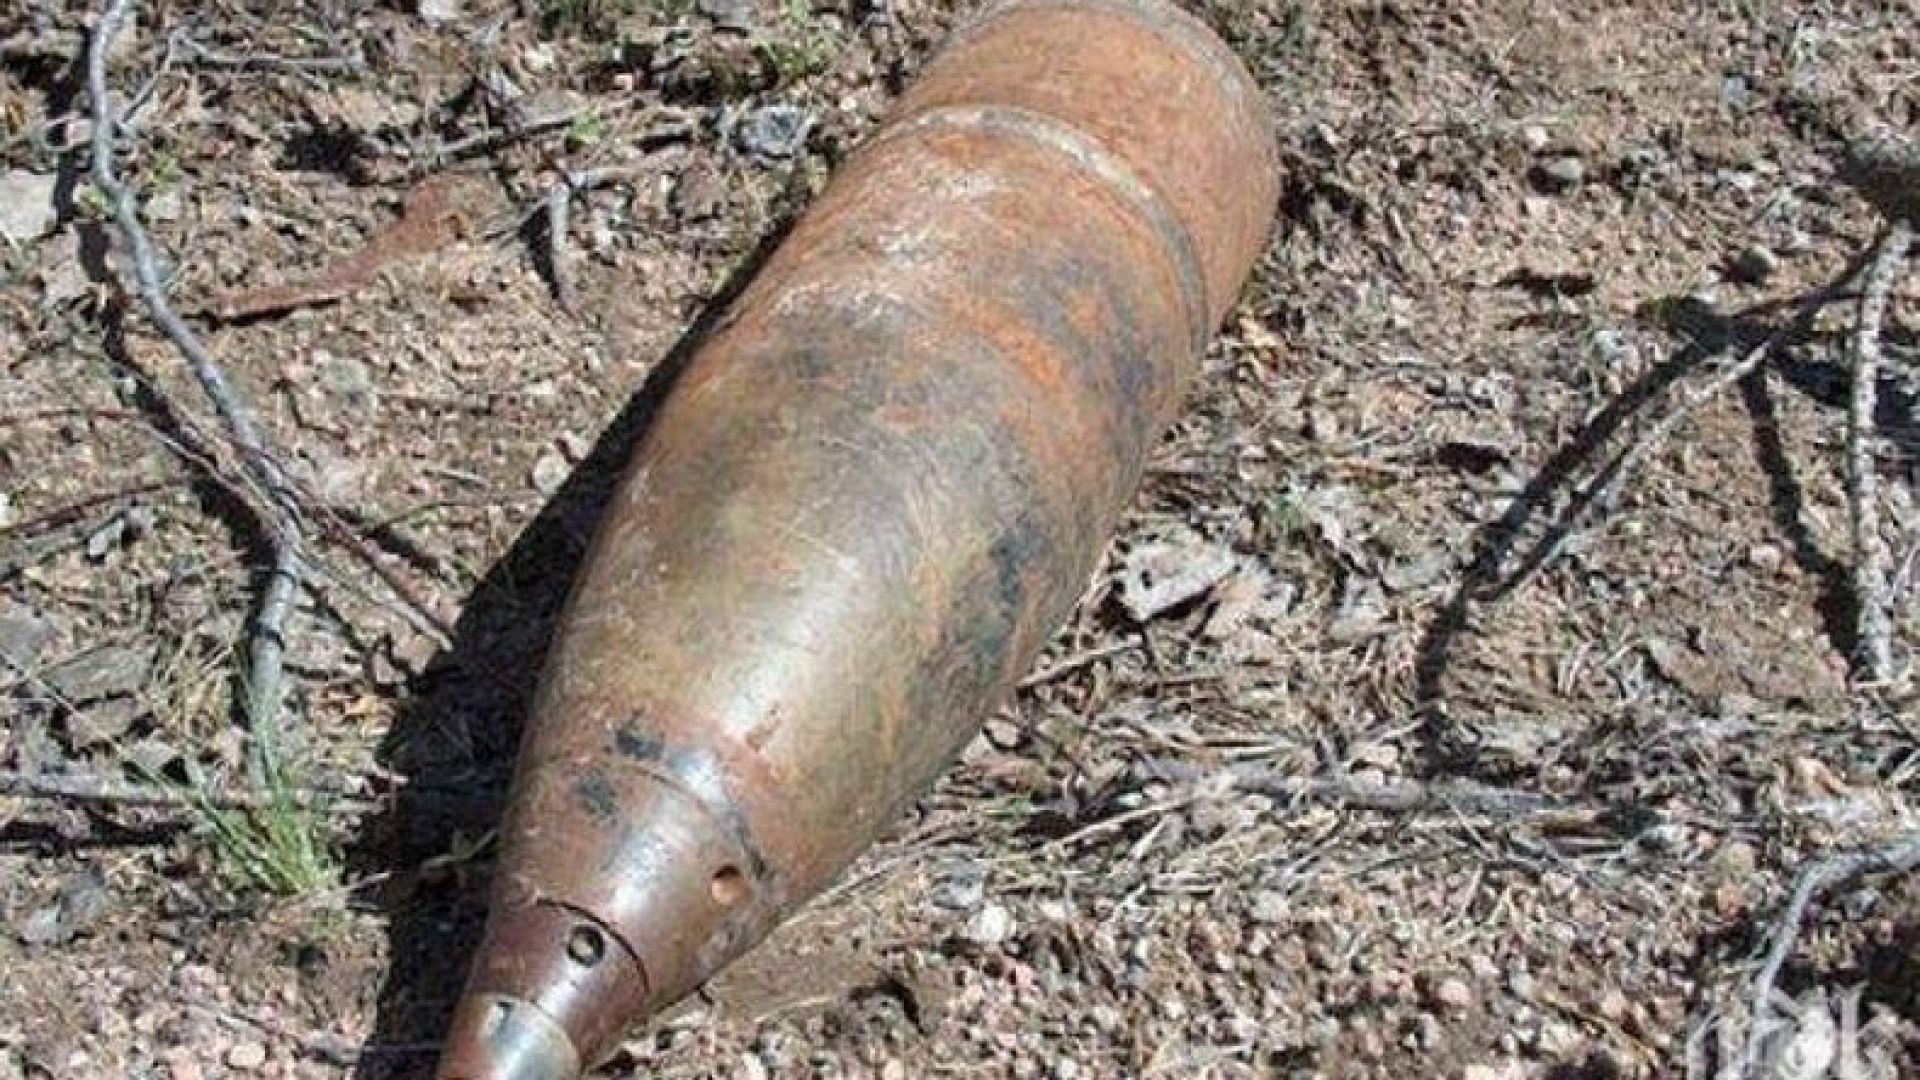 Откриха невзривен снаряд в коритото на Арда в Кърджали